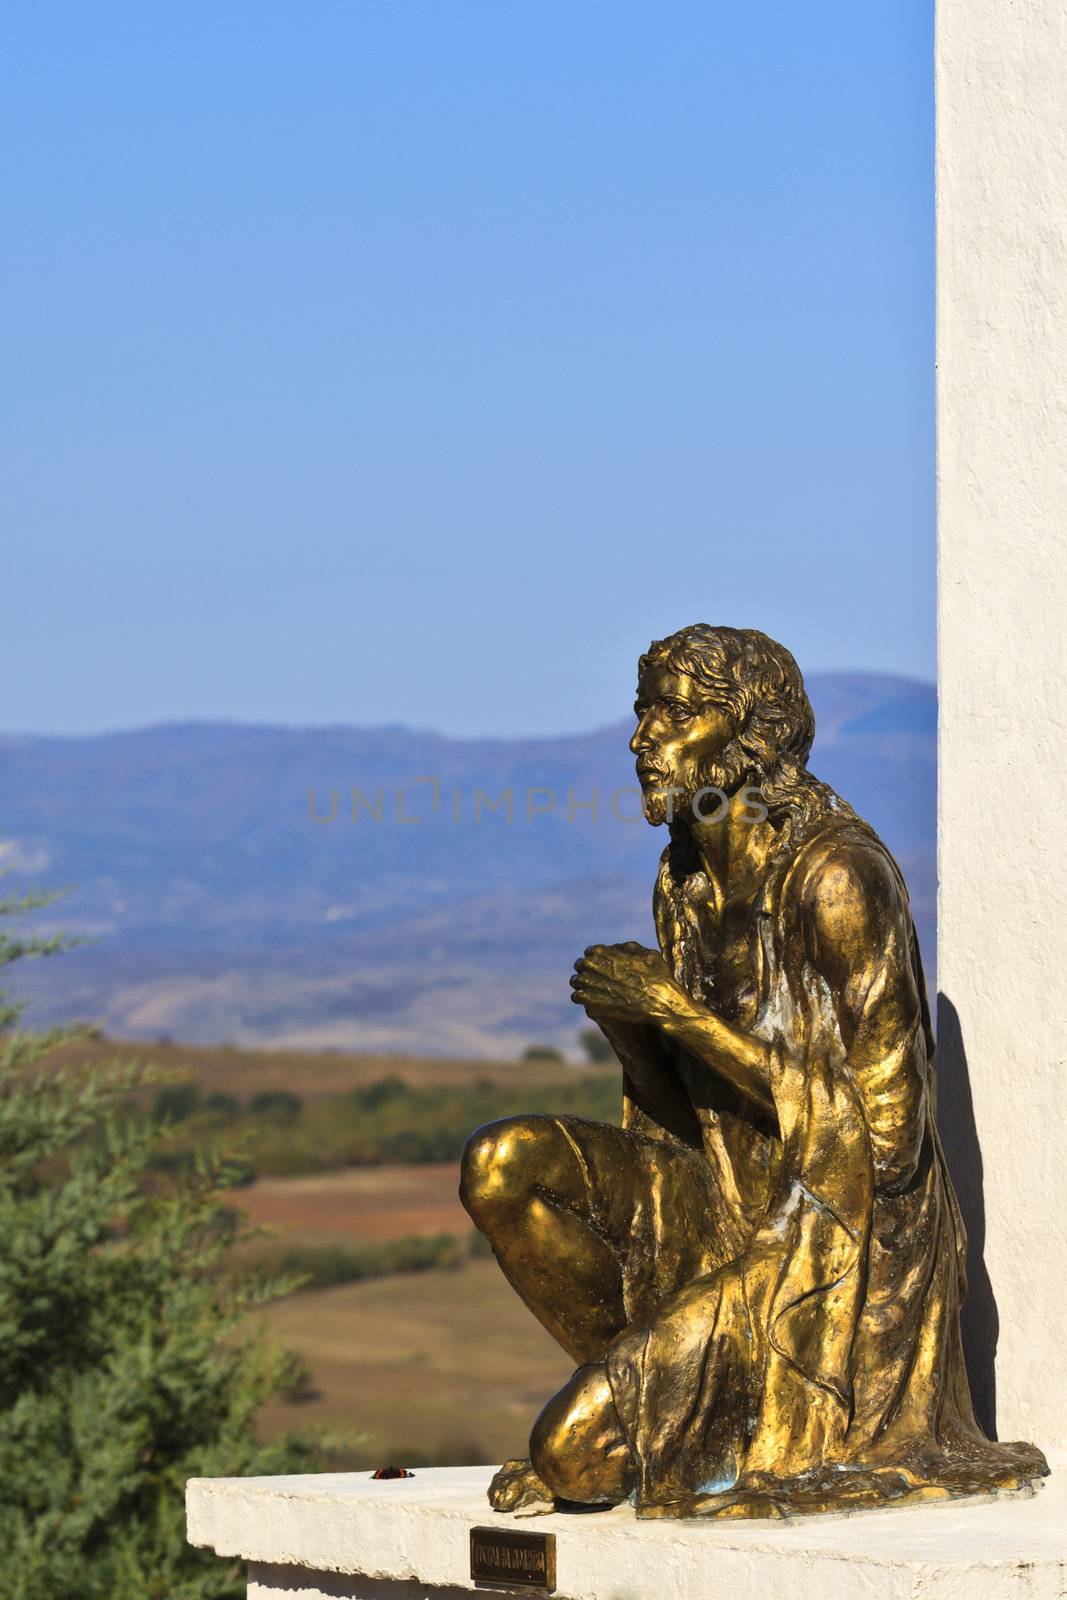 Jesus on prayer by Nikolaniko